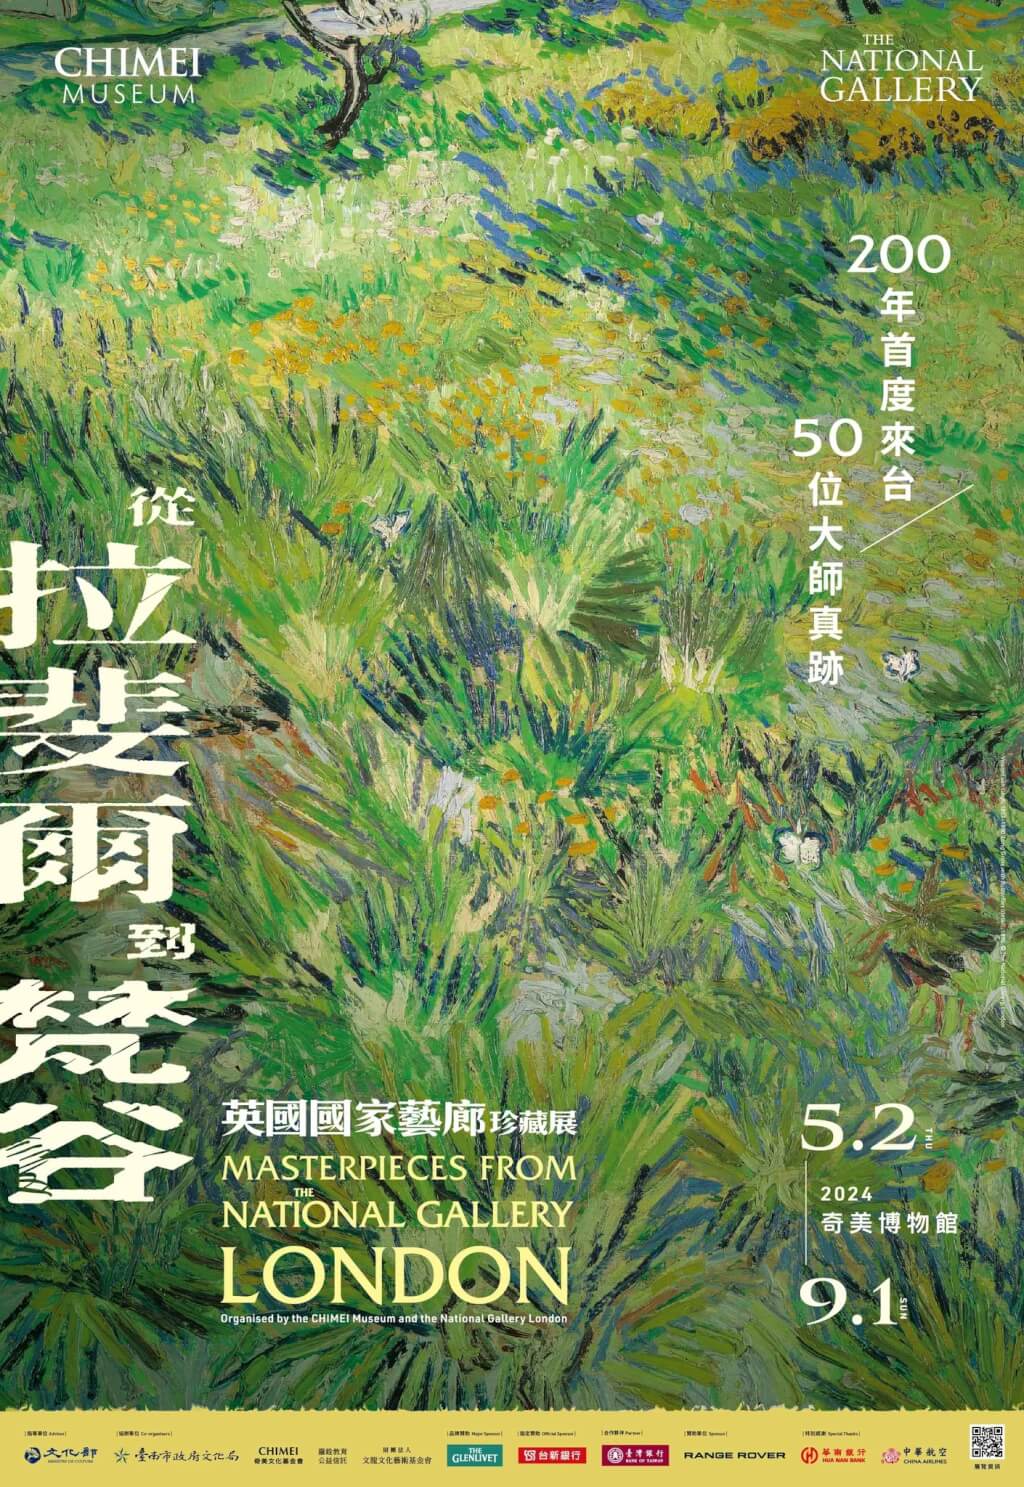 Des collections de la National Gallery exposées pour la première fois à Taïwan